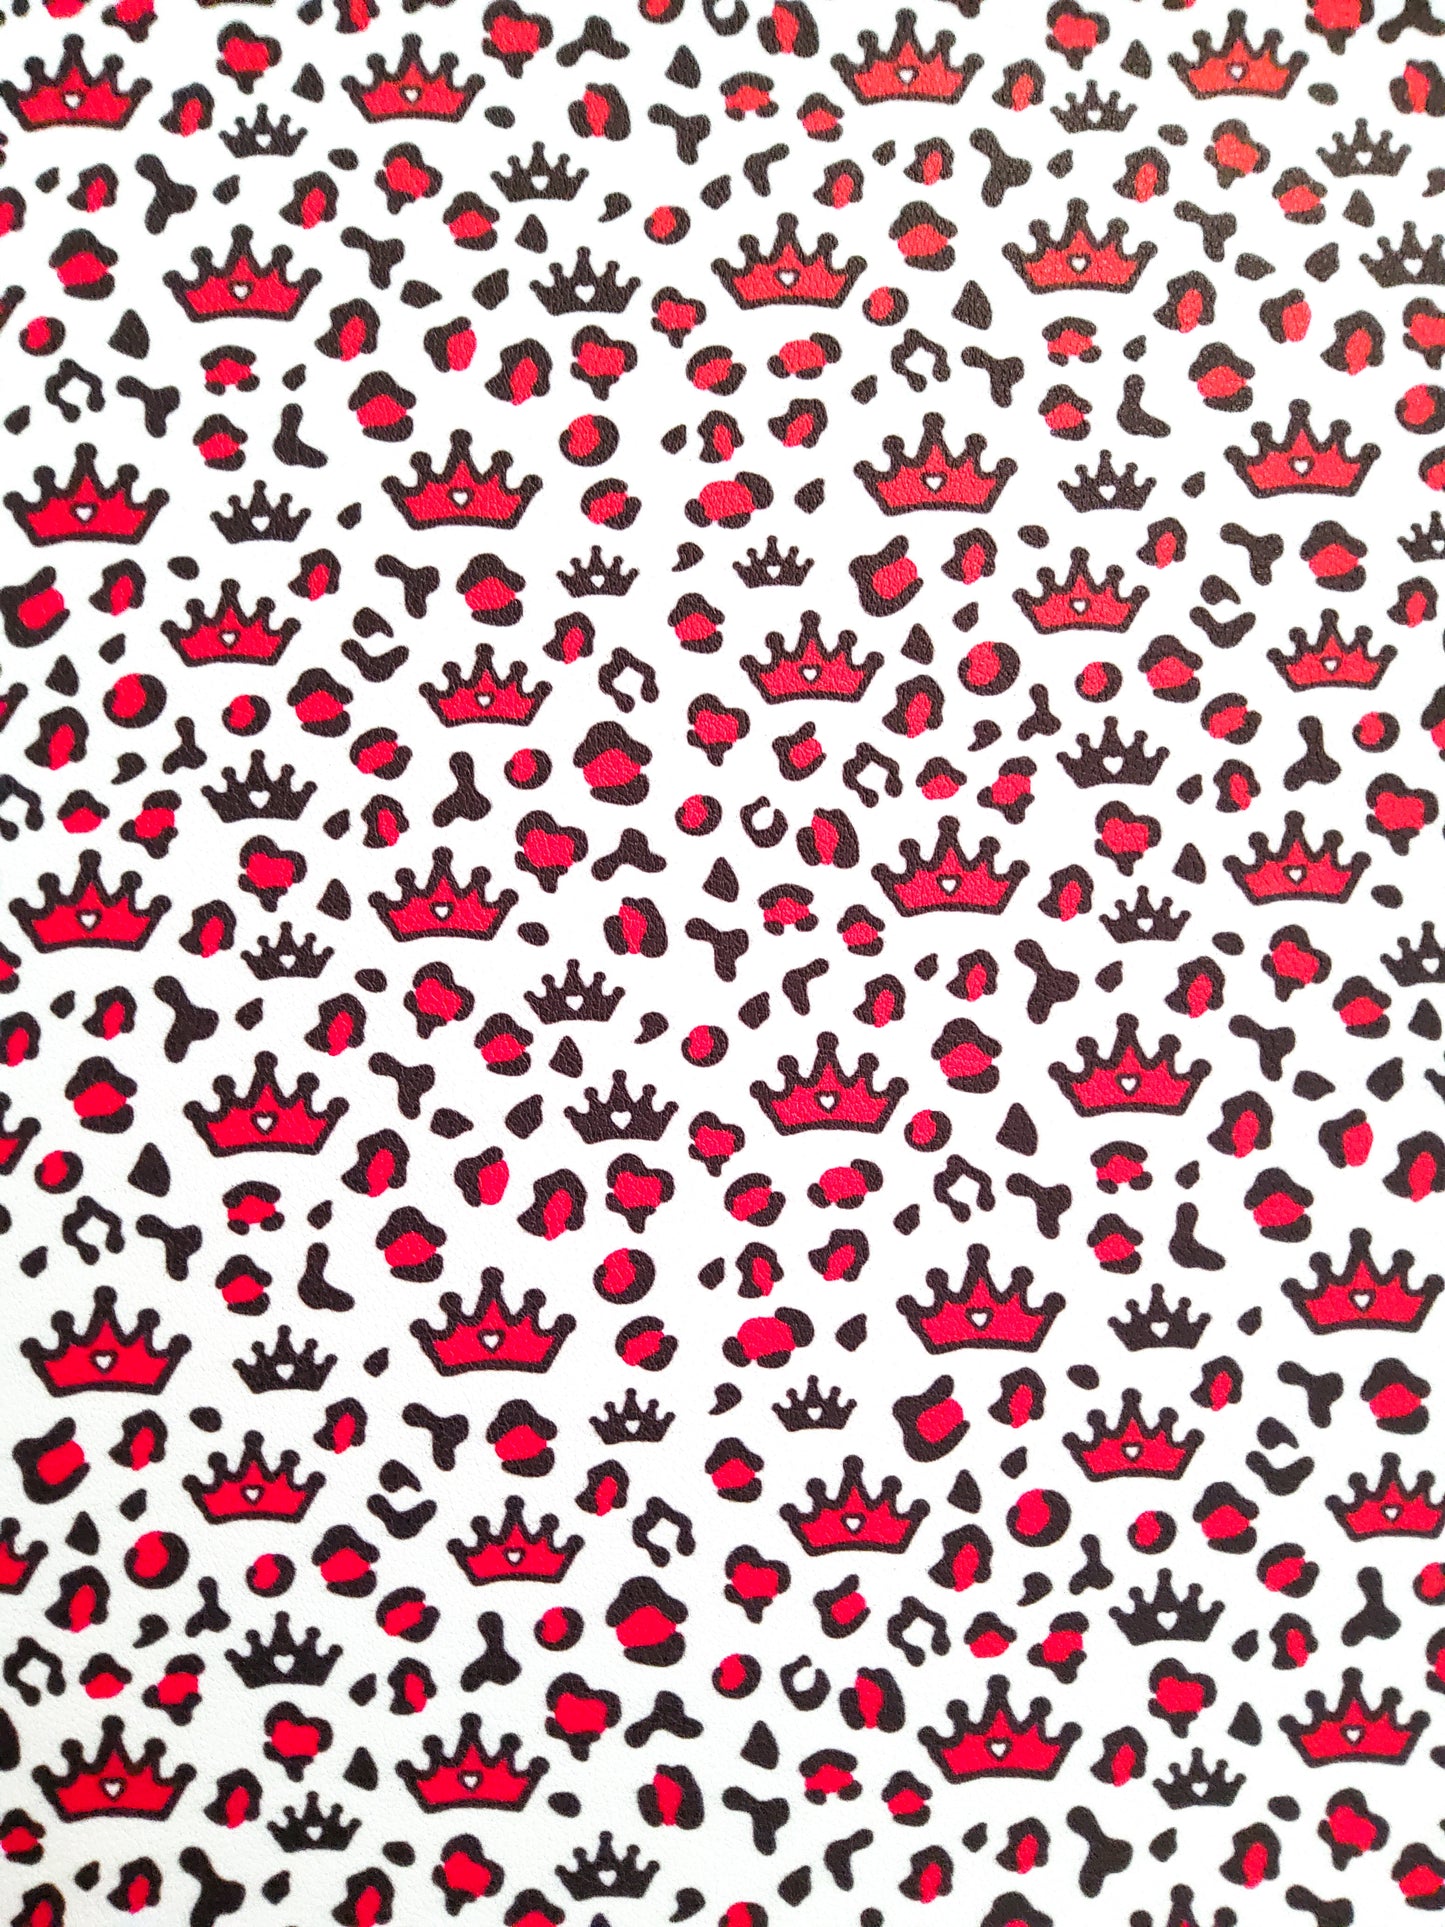 Princess Crown Animal Print 9x12 faux leather sheet